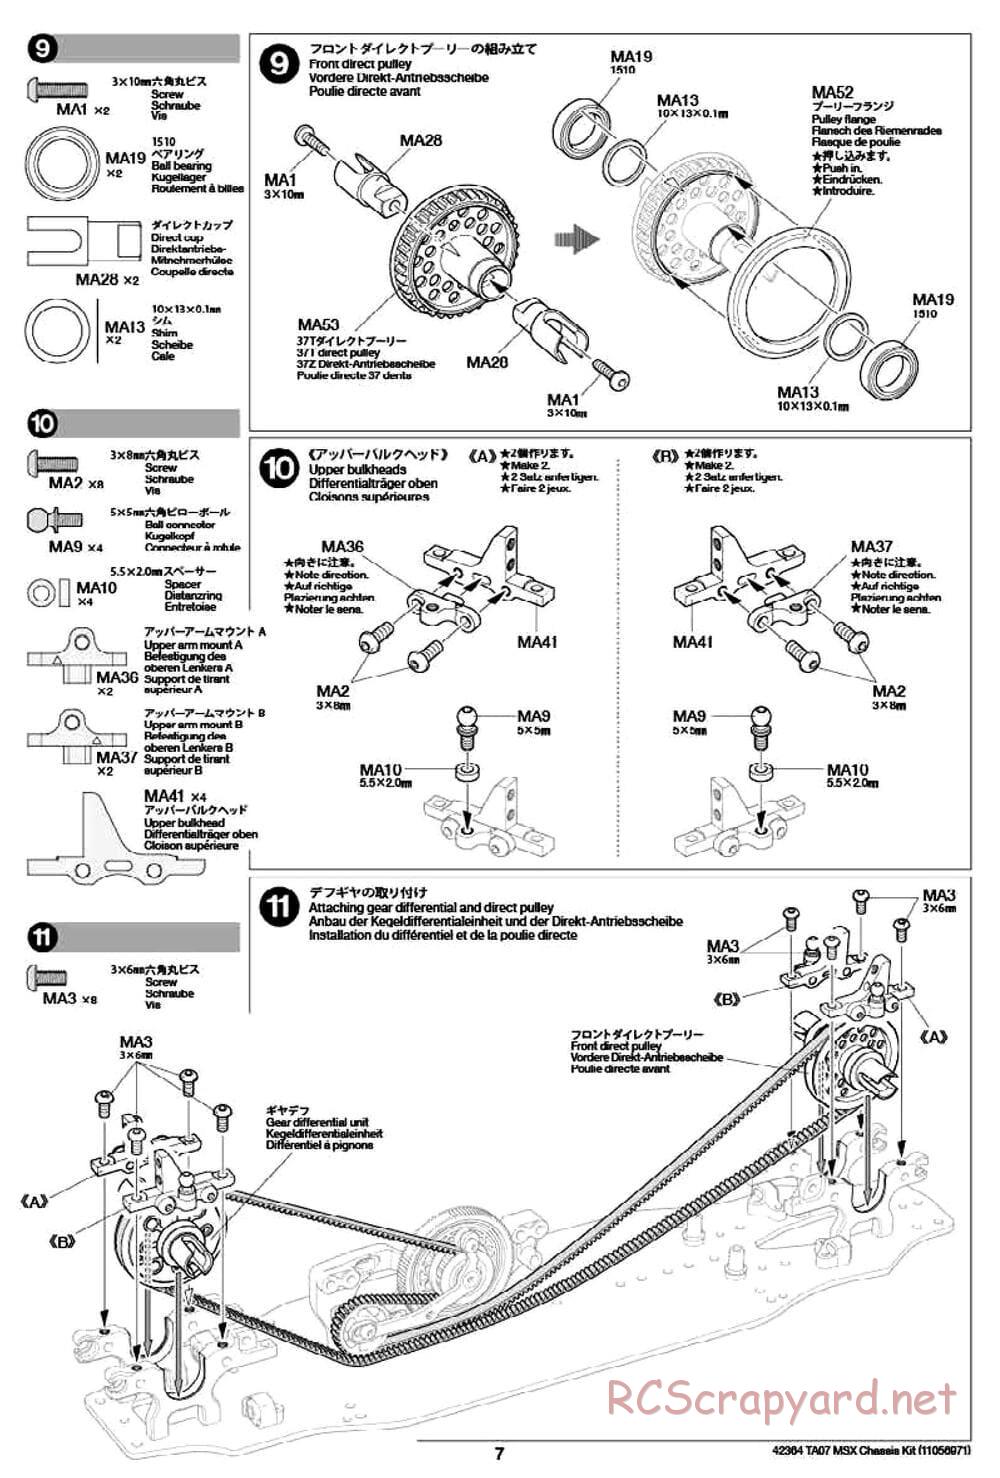 Tamiya - TA07 MSX Chassis - Manual - Page 7